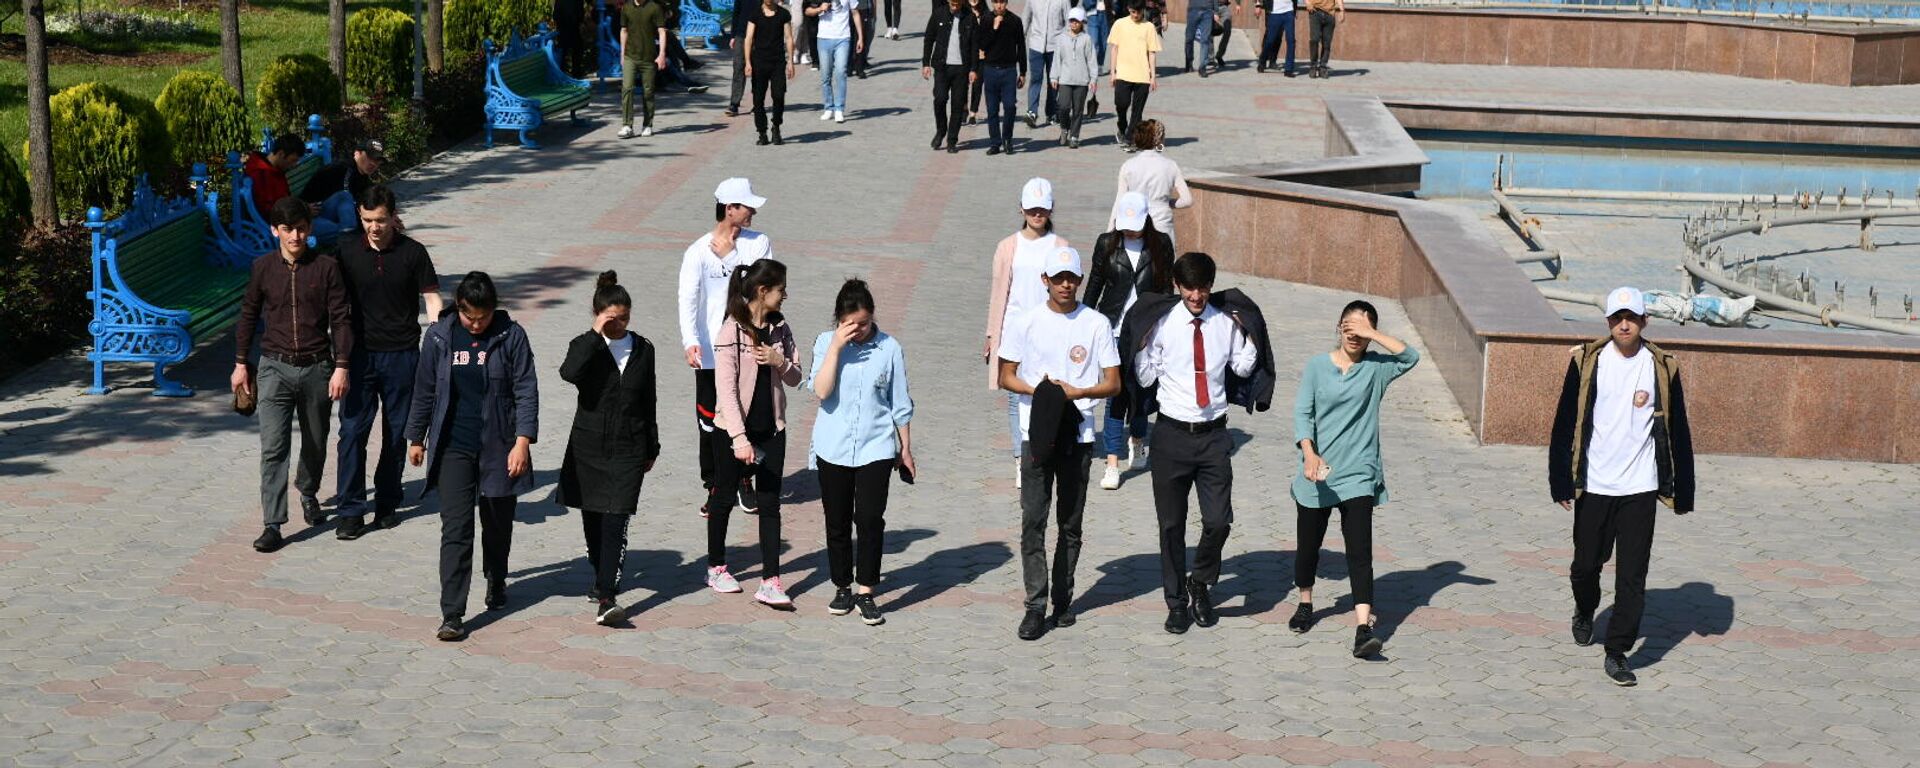 Молодежь гуляет на День города в Душанбе - Sputnik Таджикистан, 1920, 17.06.2021